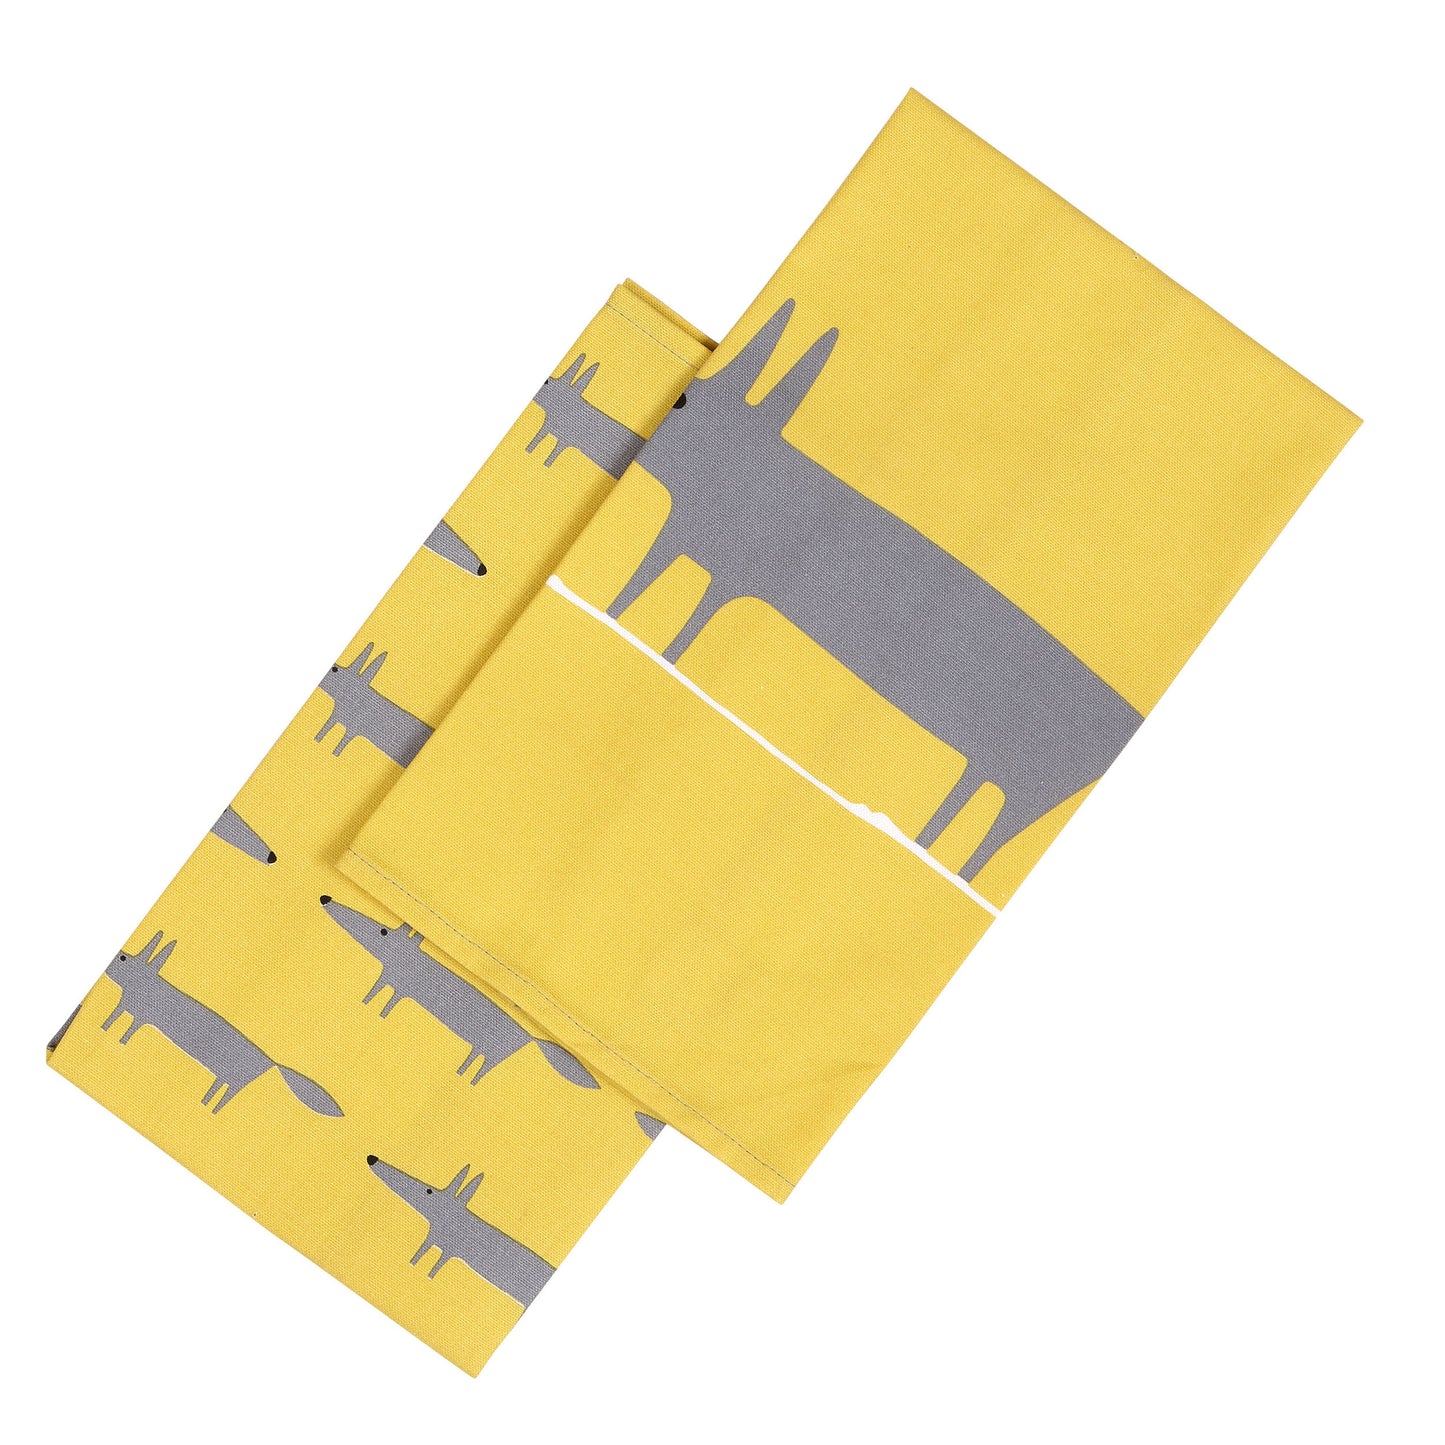 Scion Living Mr Fox Set of 2 Tea Towels - Yellow & Grey